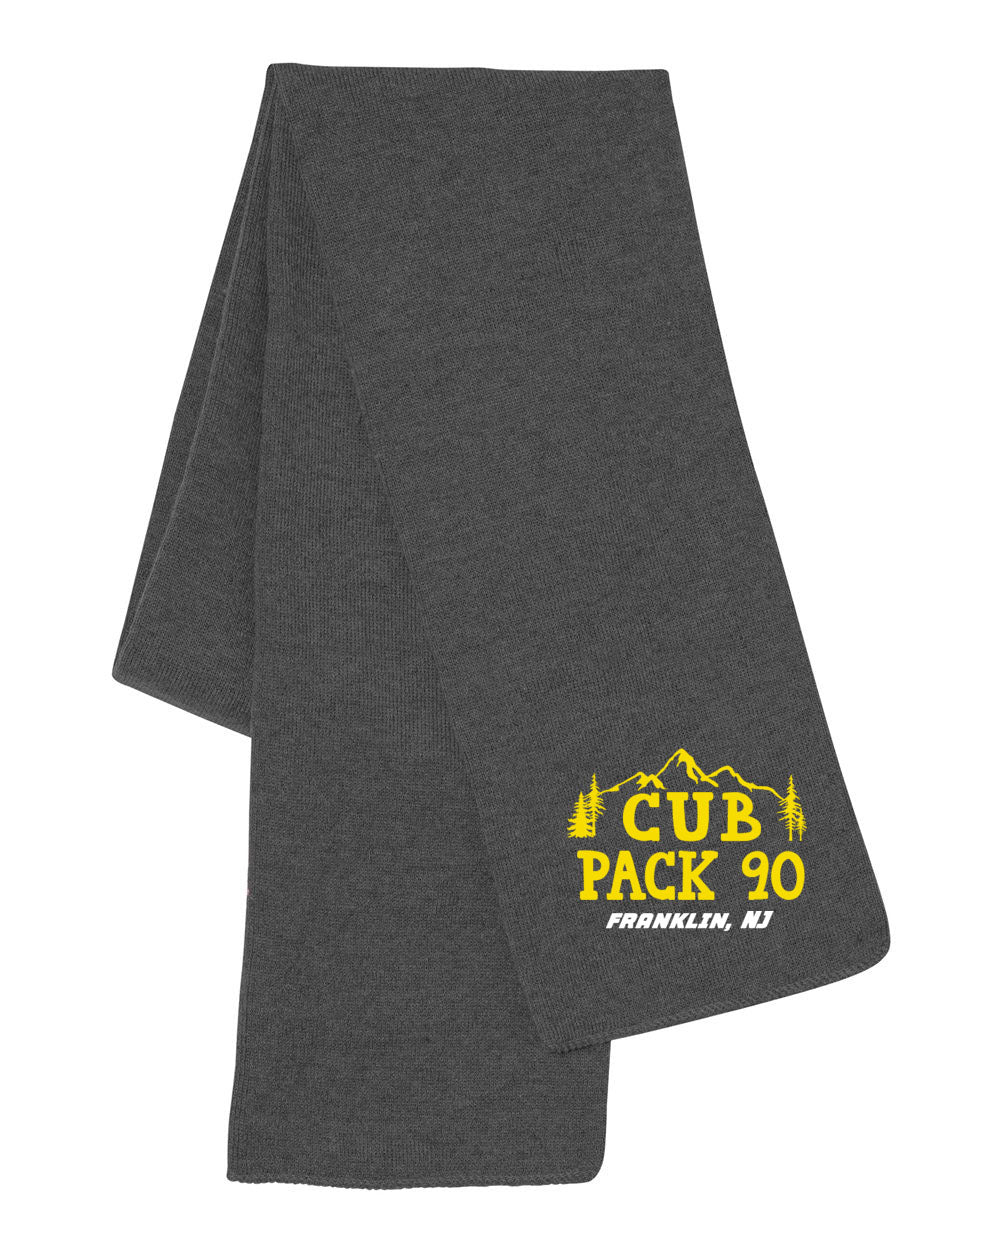 Cub Scout Pack 90 design 1 Scarf